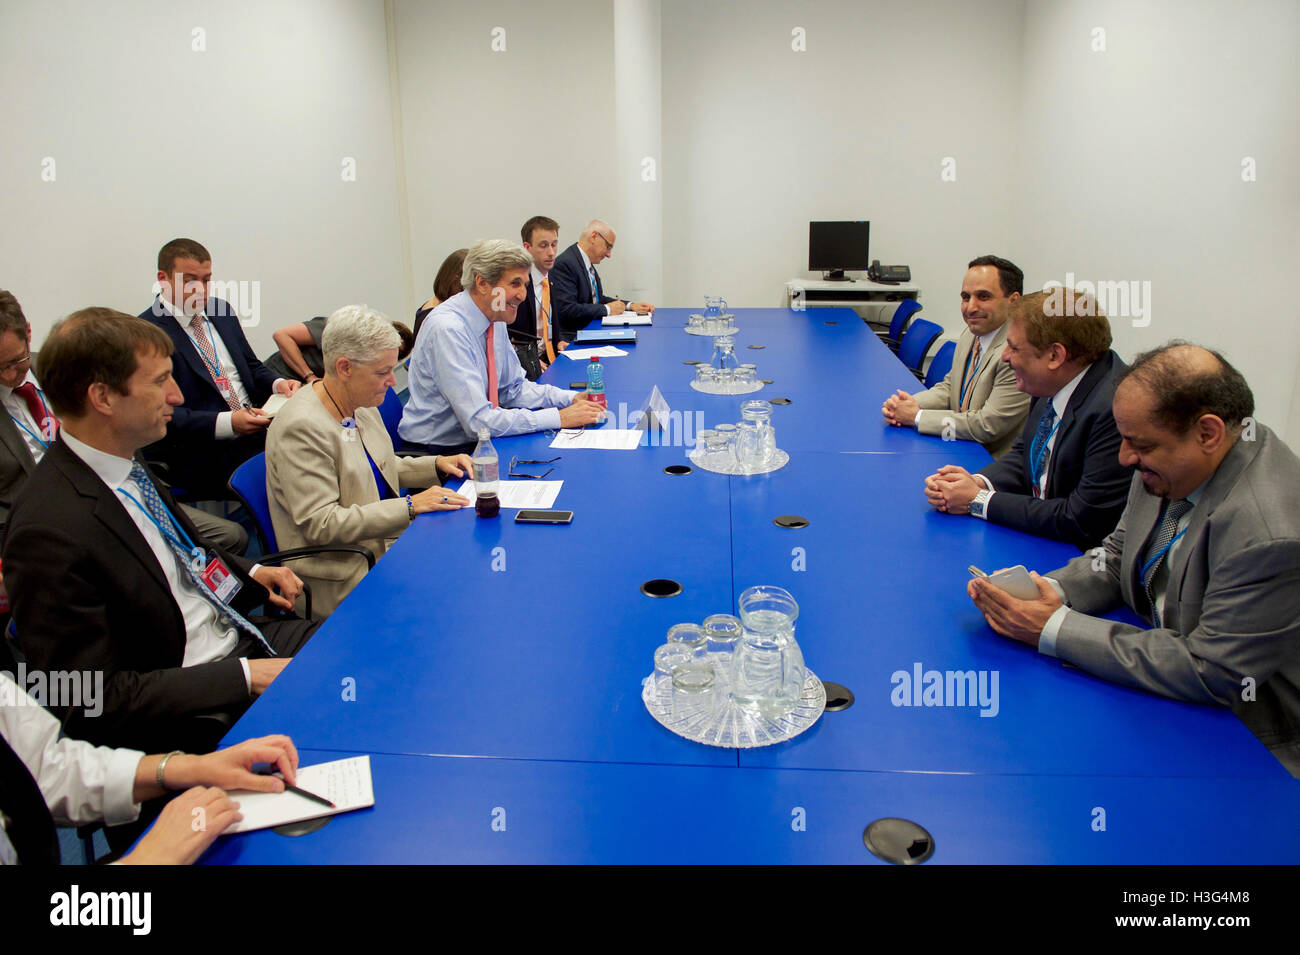 US-Außenminister John Kerry trifft mit Regierungsvertretern aus Saudi Arabien am 22. Juli 2016, bei der Vienna International Center in Wien, mitten in Verhandlungen zur Änderung des Montrealer Protokolls Abkommen zum Klimawandel. Stockfoto